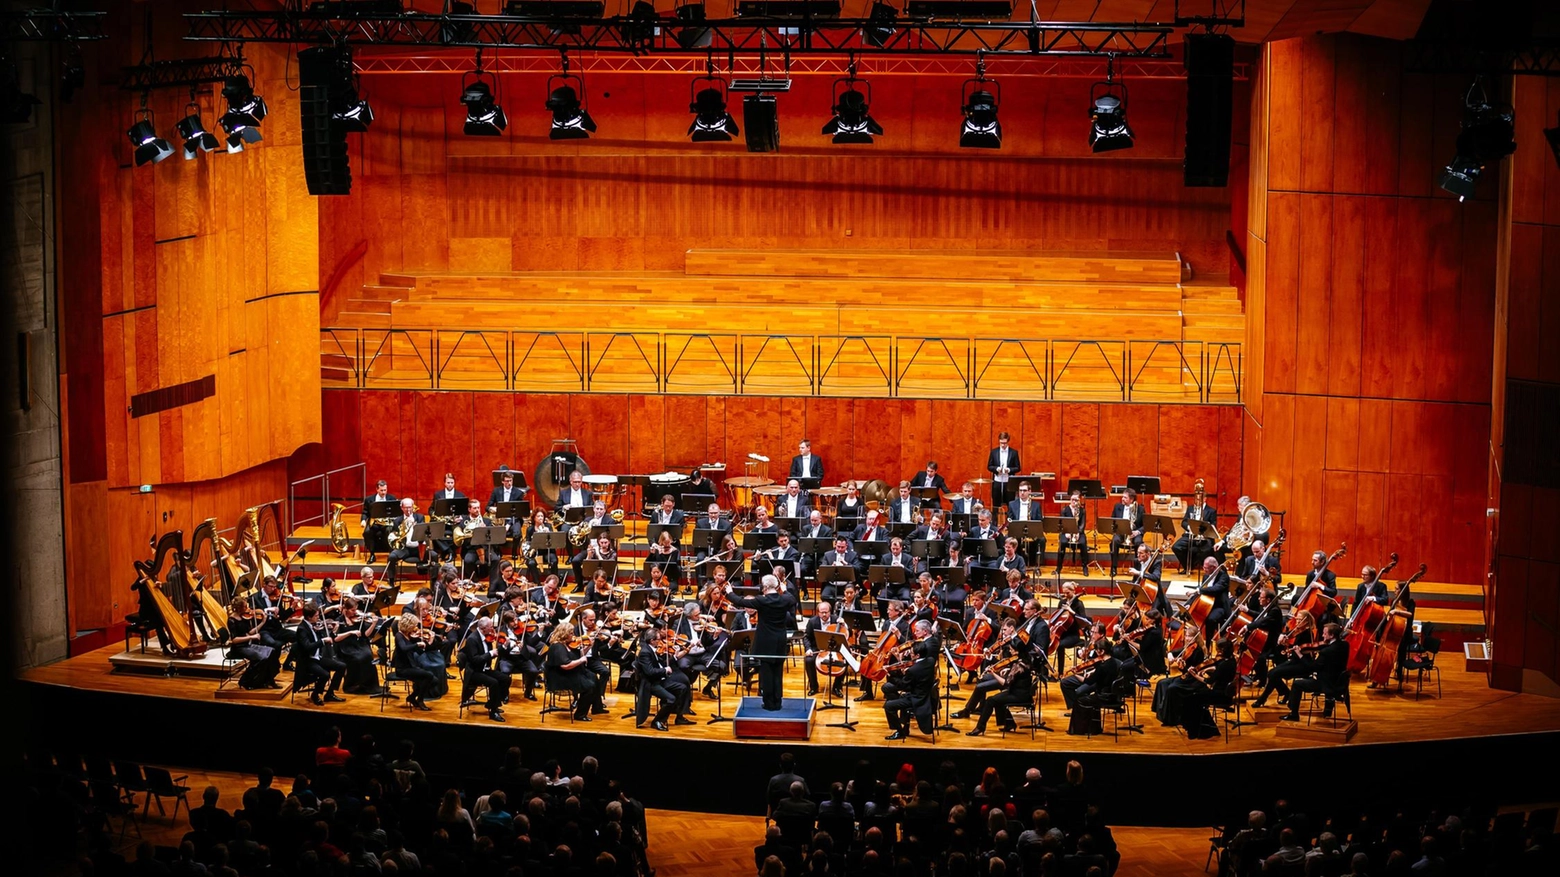 Domani la serie di concerti al Pavarotti Freni si chiuderà con l’esibizione dell’orchestra fondata nel 1924. Ospite speciale sarà la pianista Nareh Arghamanyan. Eseguiranno brani di Mozart e Bruckner.